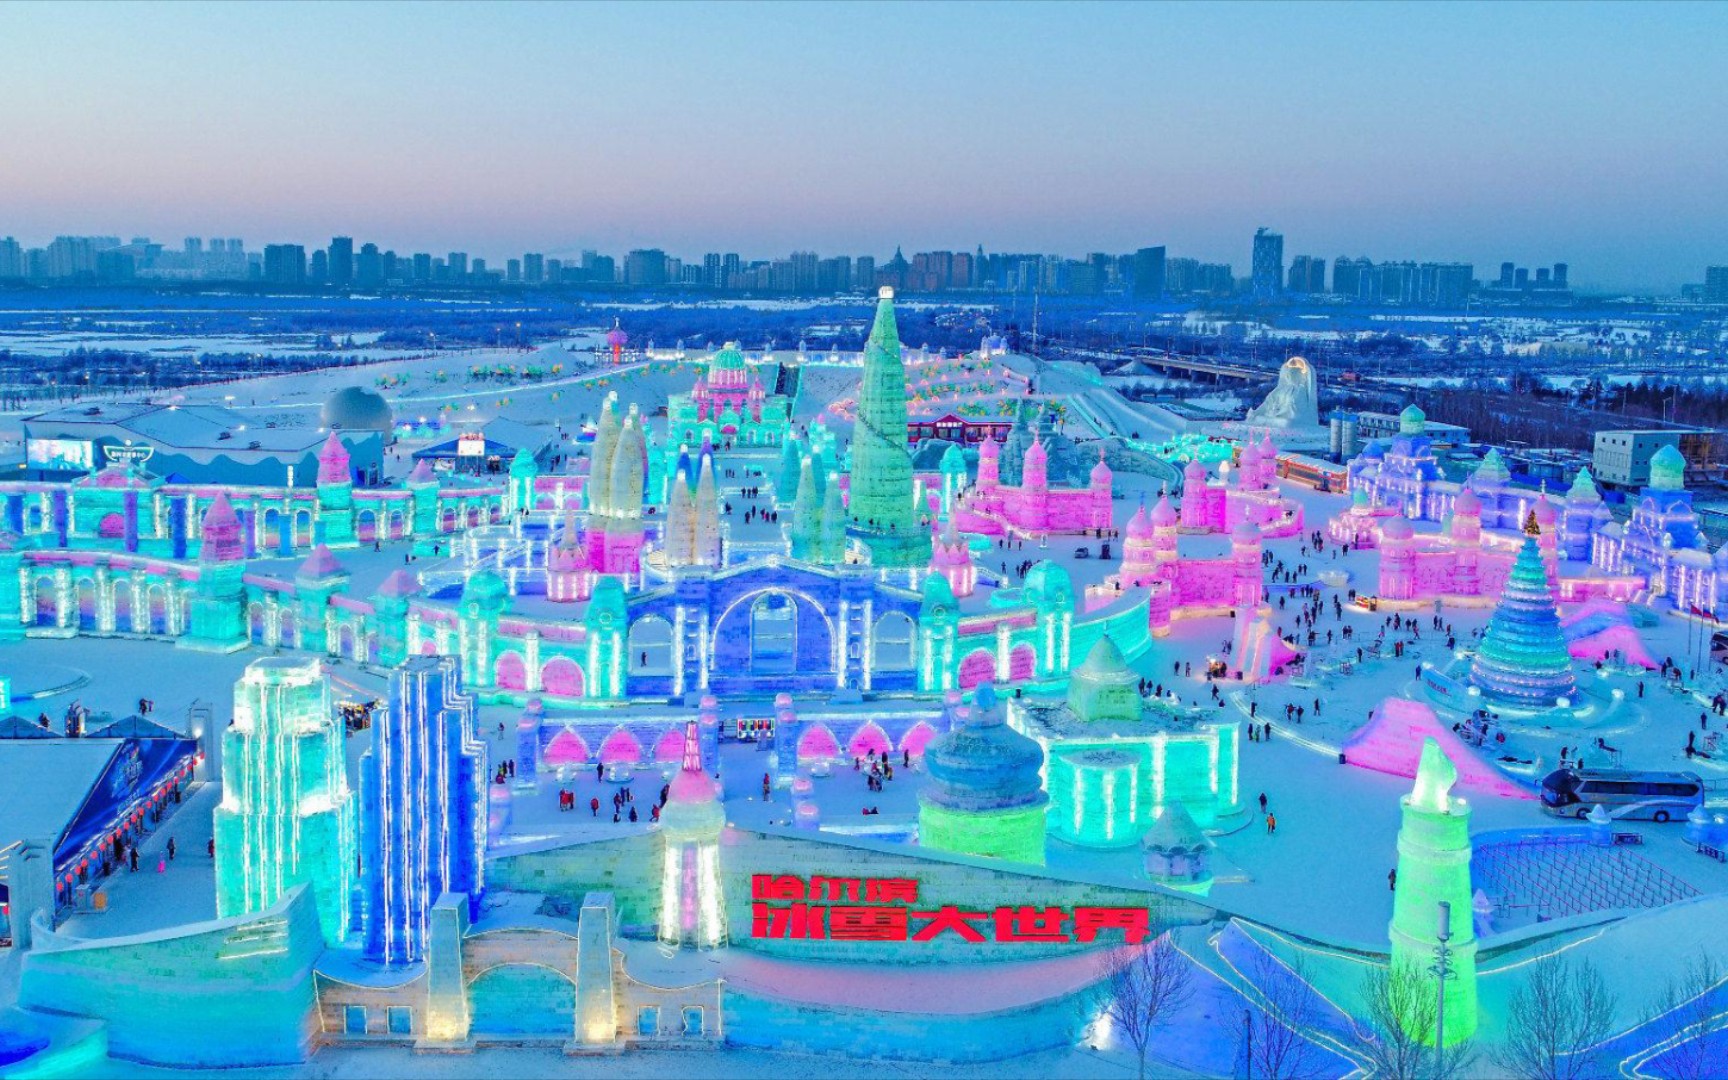 哈尔滨冰雪大世界夏天图片